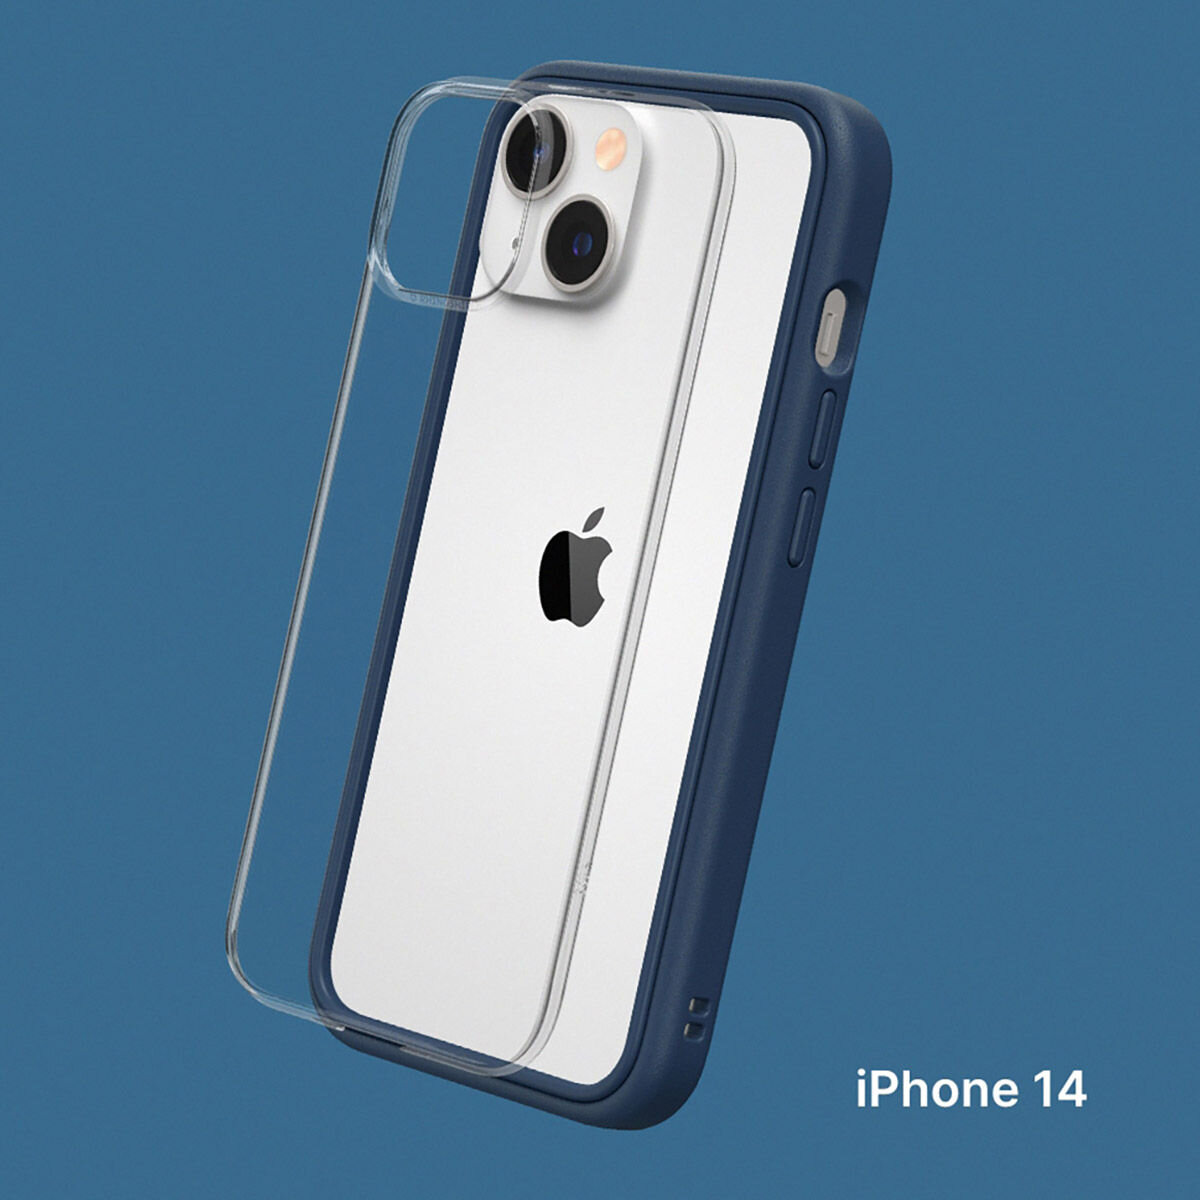 犀牛盾 iPhone 14 MOD NX 防摔手機殼 + 9H 3D滿版螢幕玻璃保護貼 海軍藍